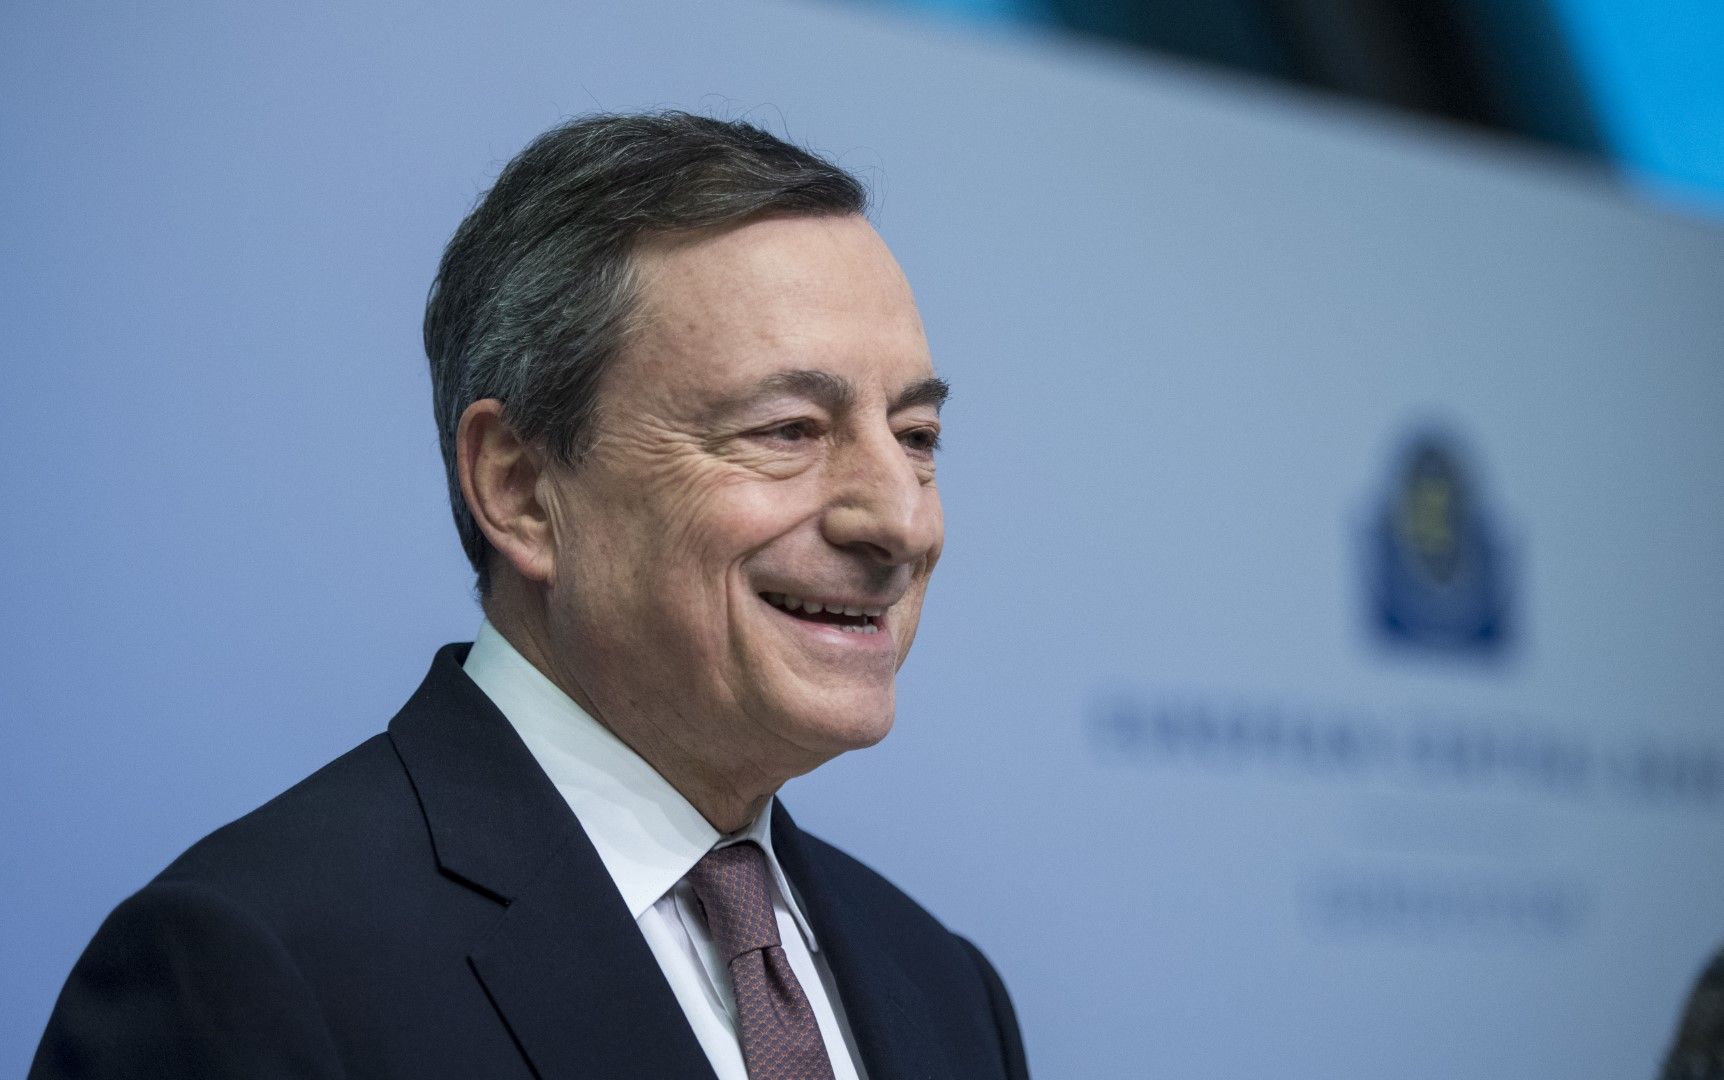 Европейската централна банка (ЕЦБ) трябва да продължи значителната си подкрепа за кредитирането и икономиката, каза Драги